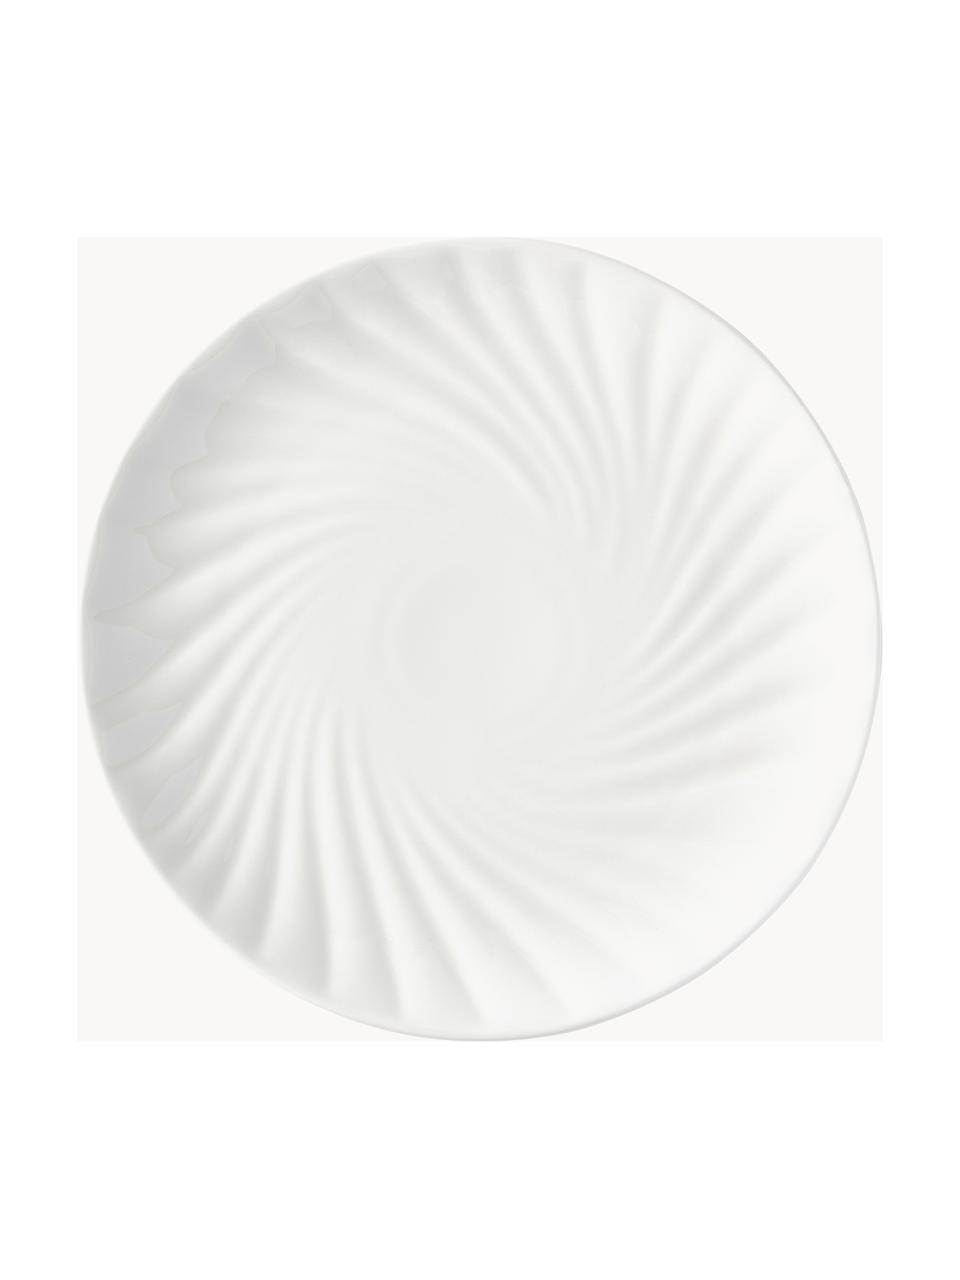 Komplet naczyń z porcelany Malina, dla 4 osób (12 elem.), Porcelana, Biały, błyszczący, 4 osoby (12 elem.)